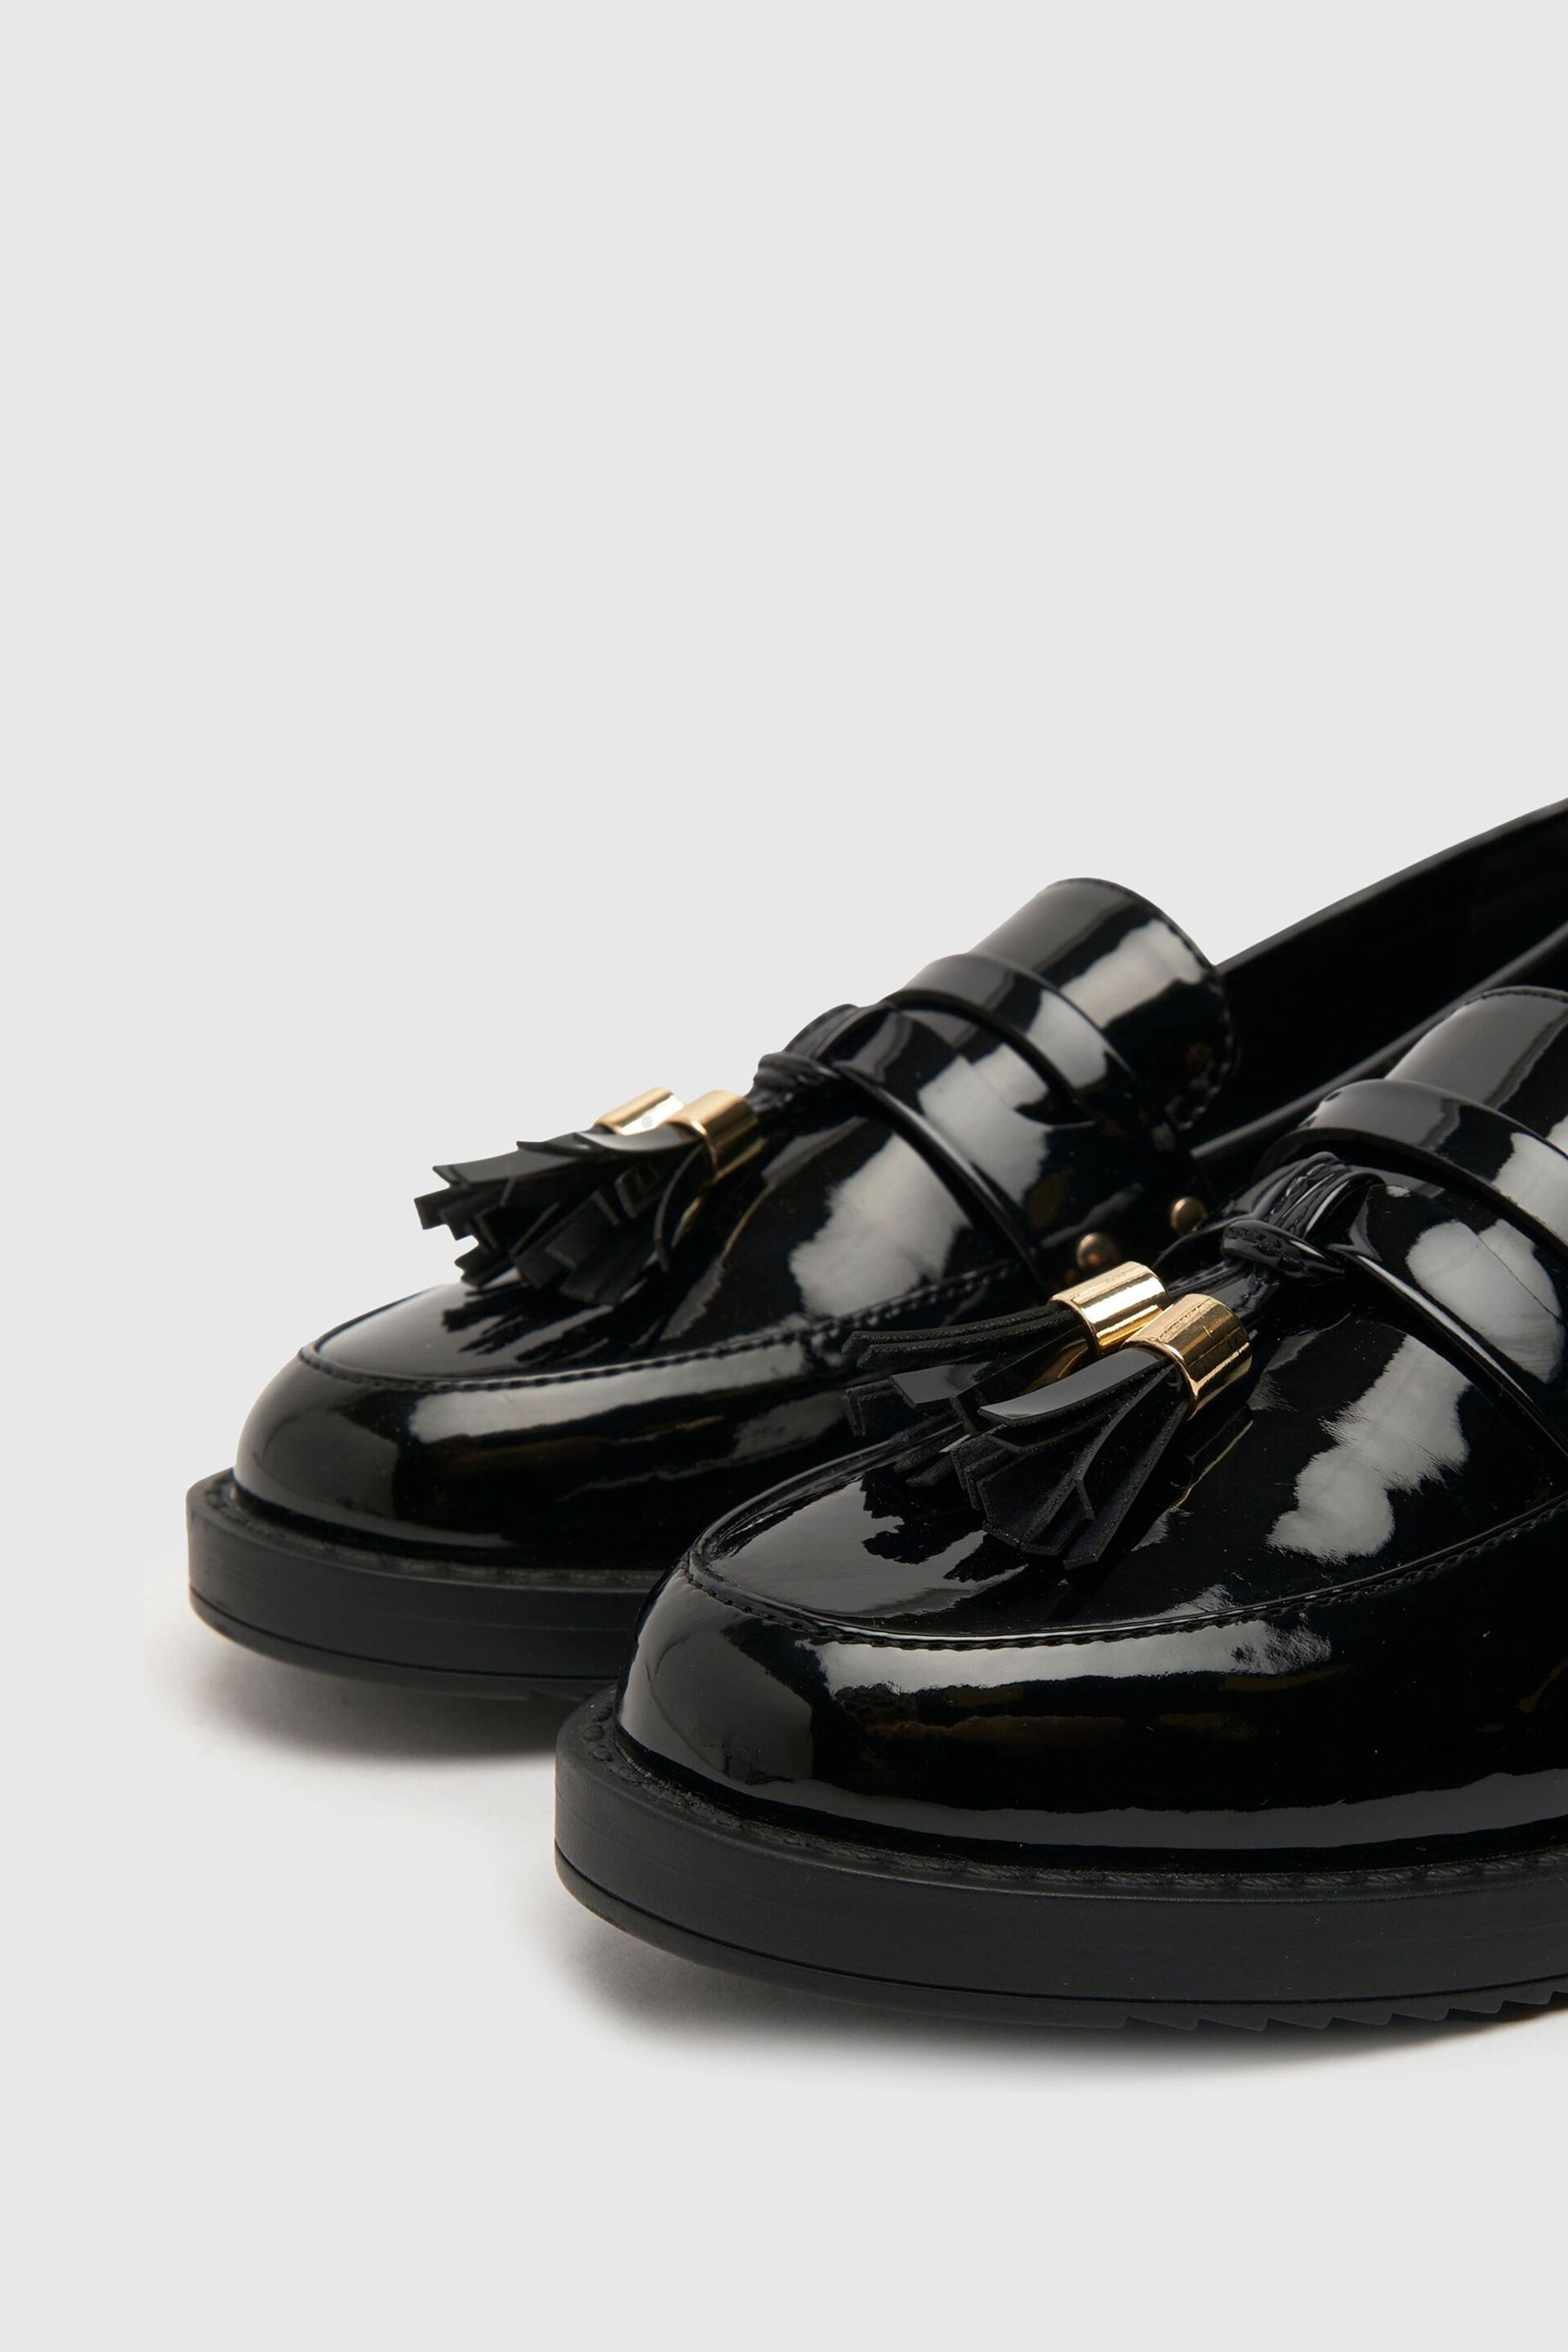 Schuh Lisbon Tassel Loafers - Image 4 of 4